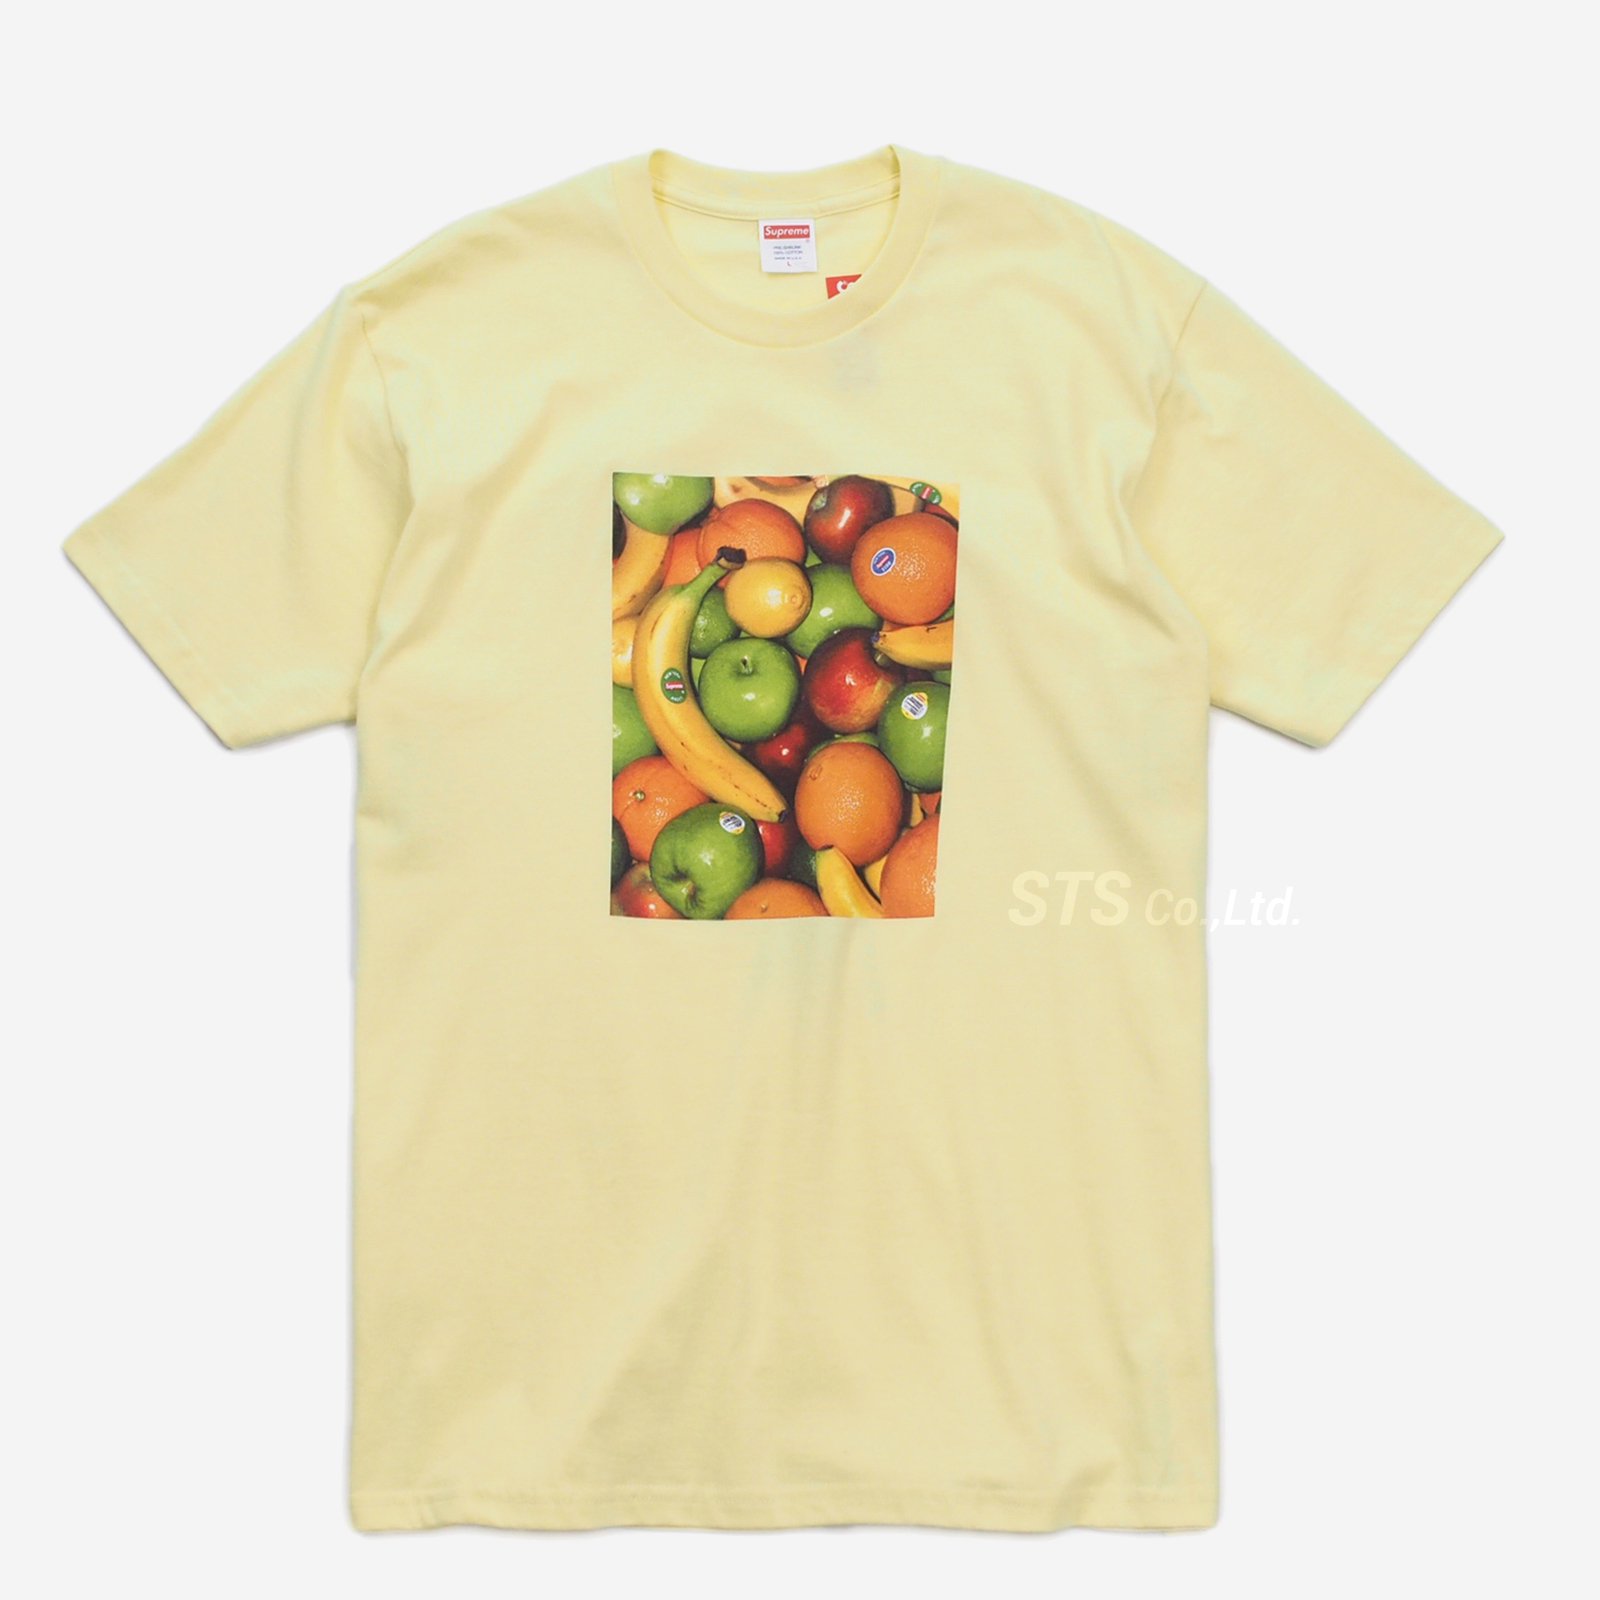 Tシャツ/カットソー(半袖/袖なし)Mサイズ  Supreme  fruit tee